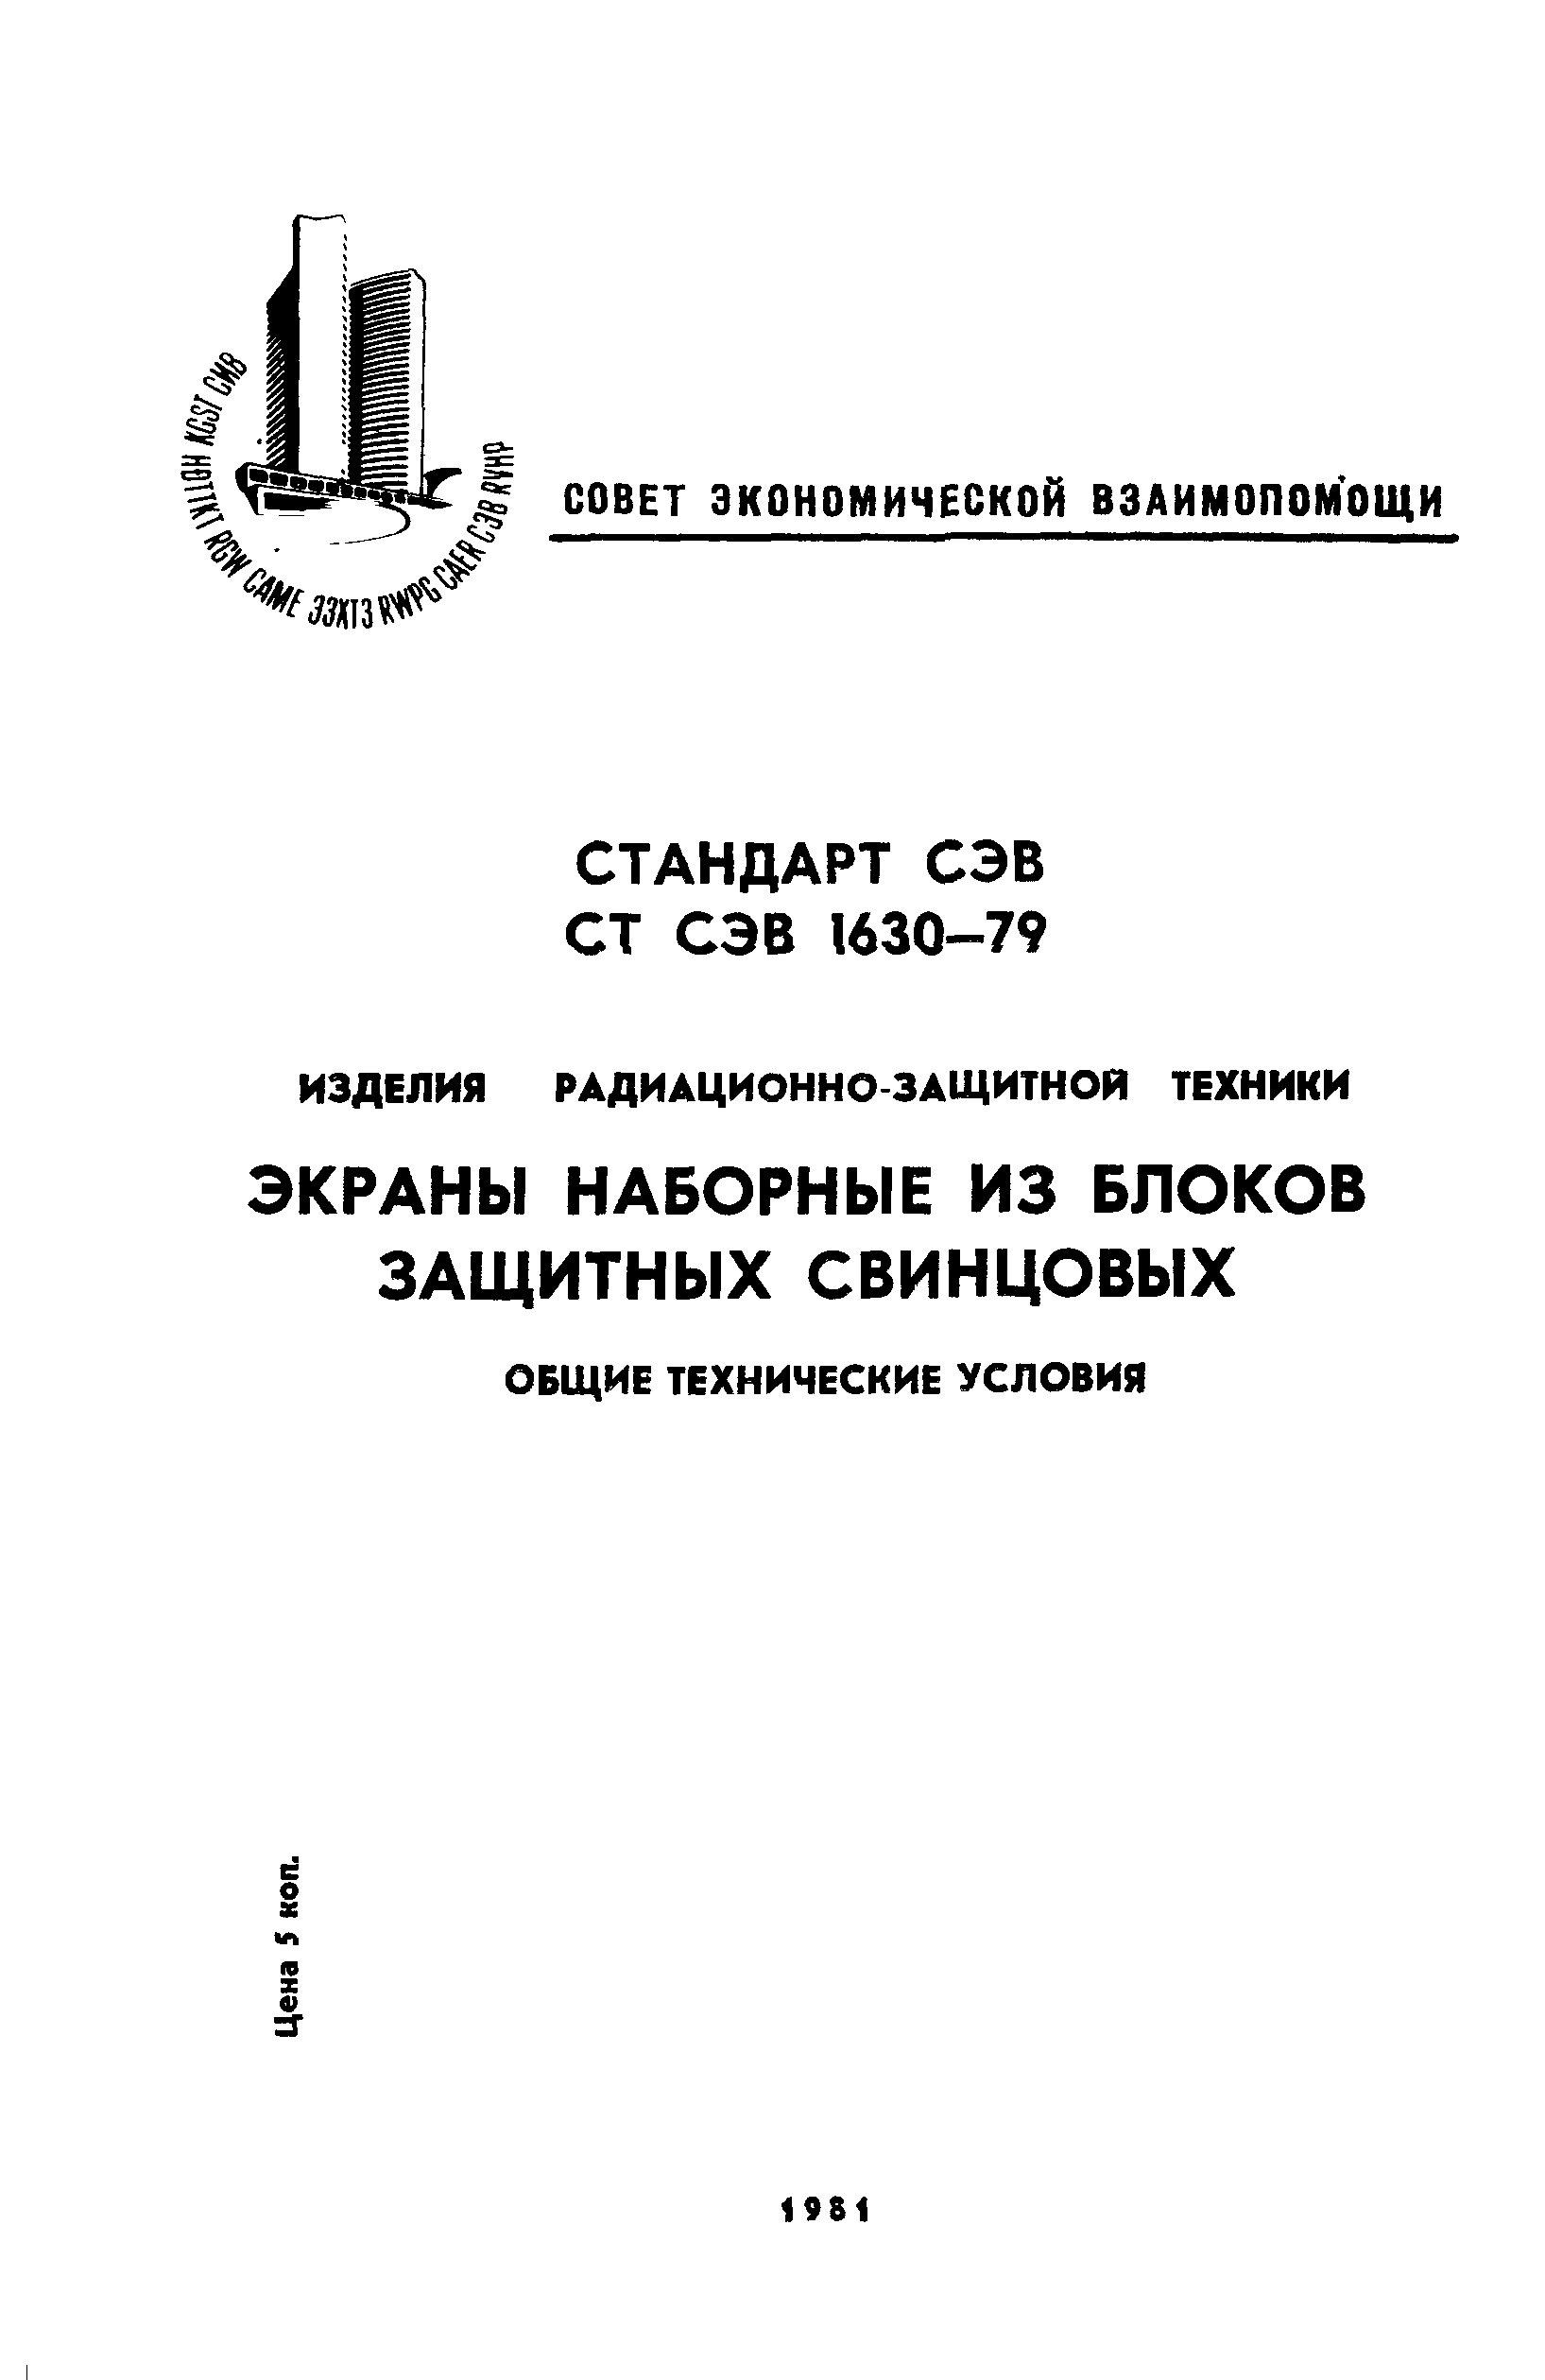 СТ СЭВ 1630-79